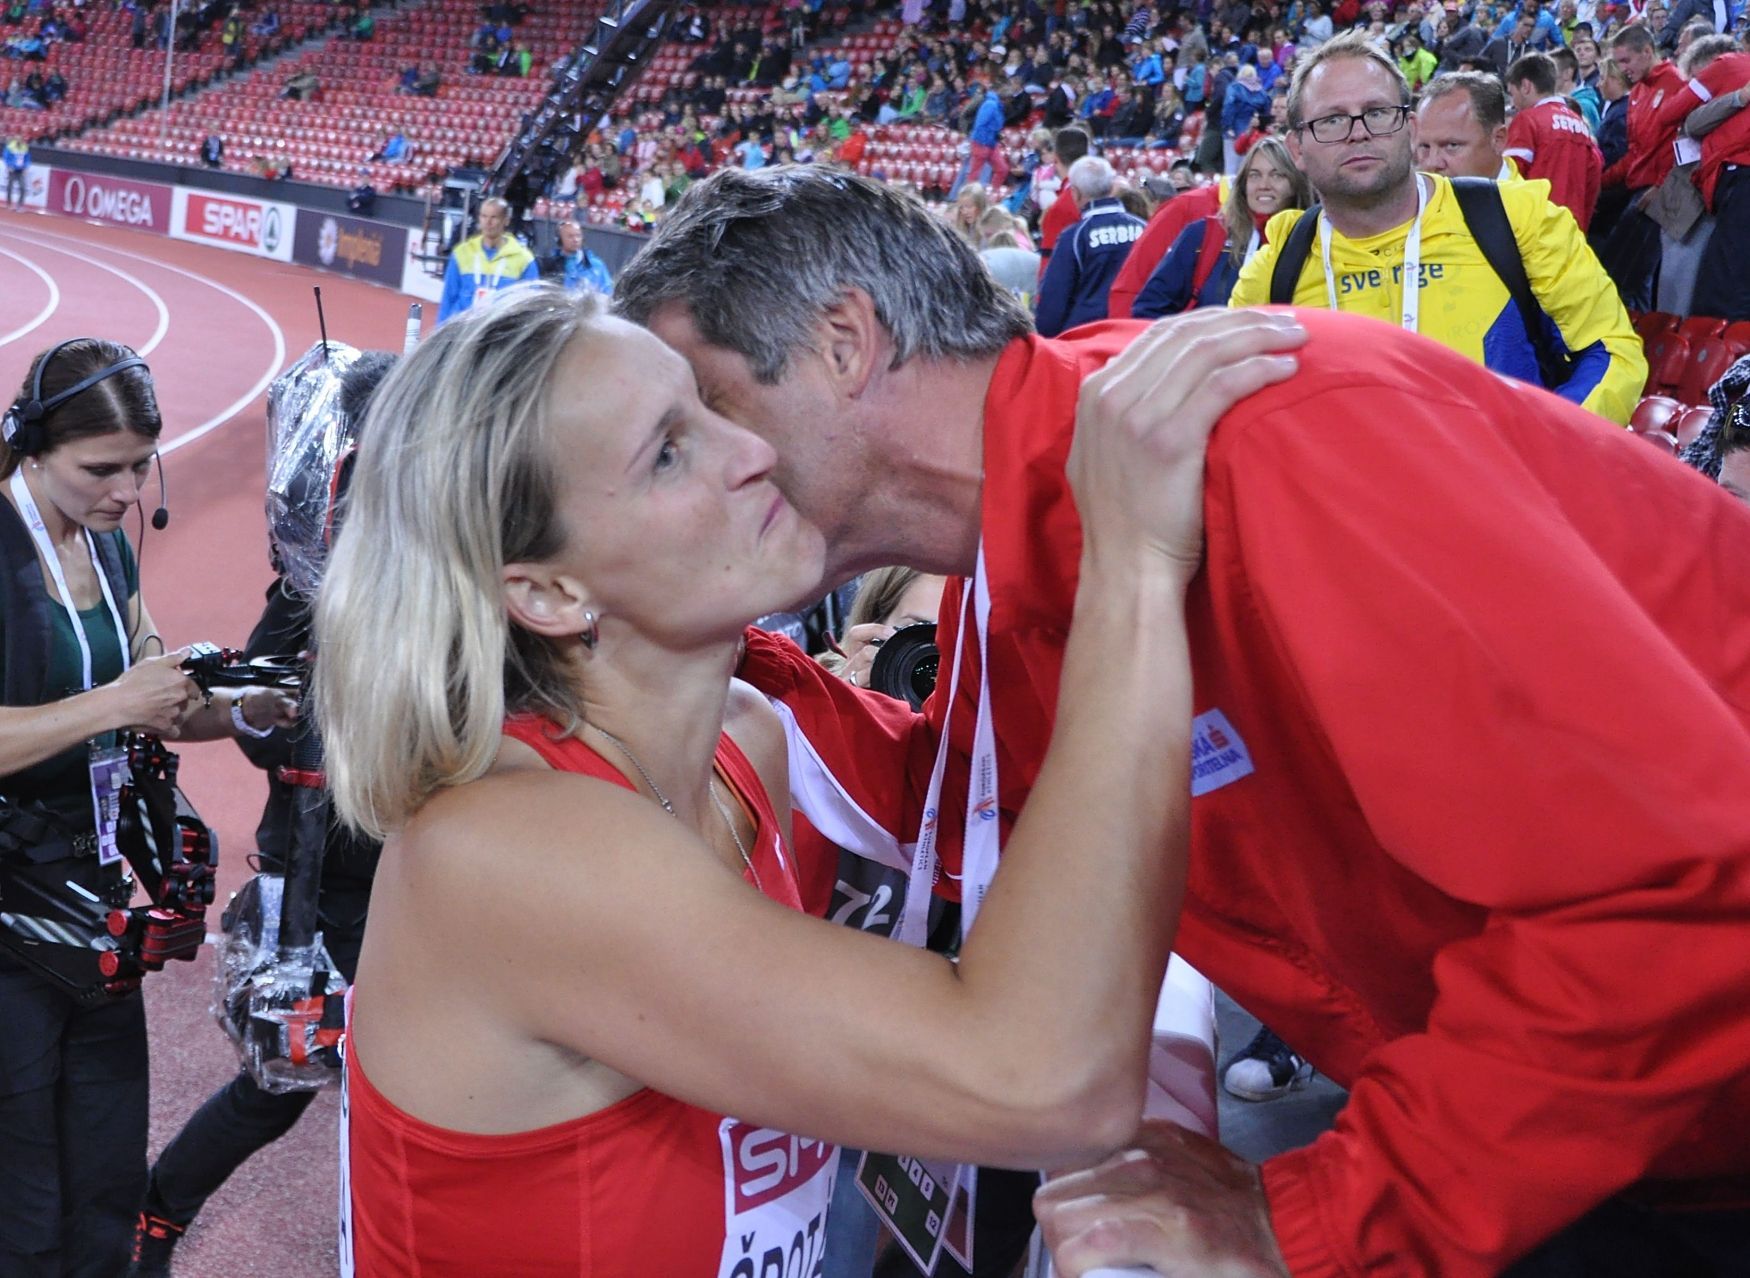 ME v atletice, oštěp: Barbora Špotáková a Jan Železný